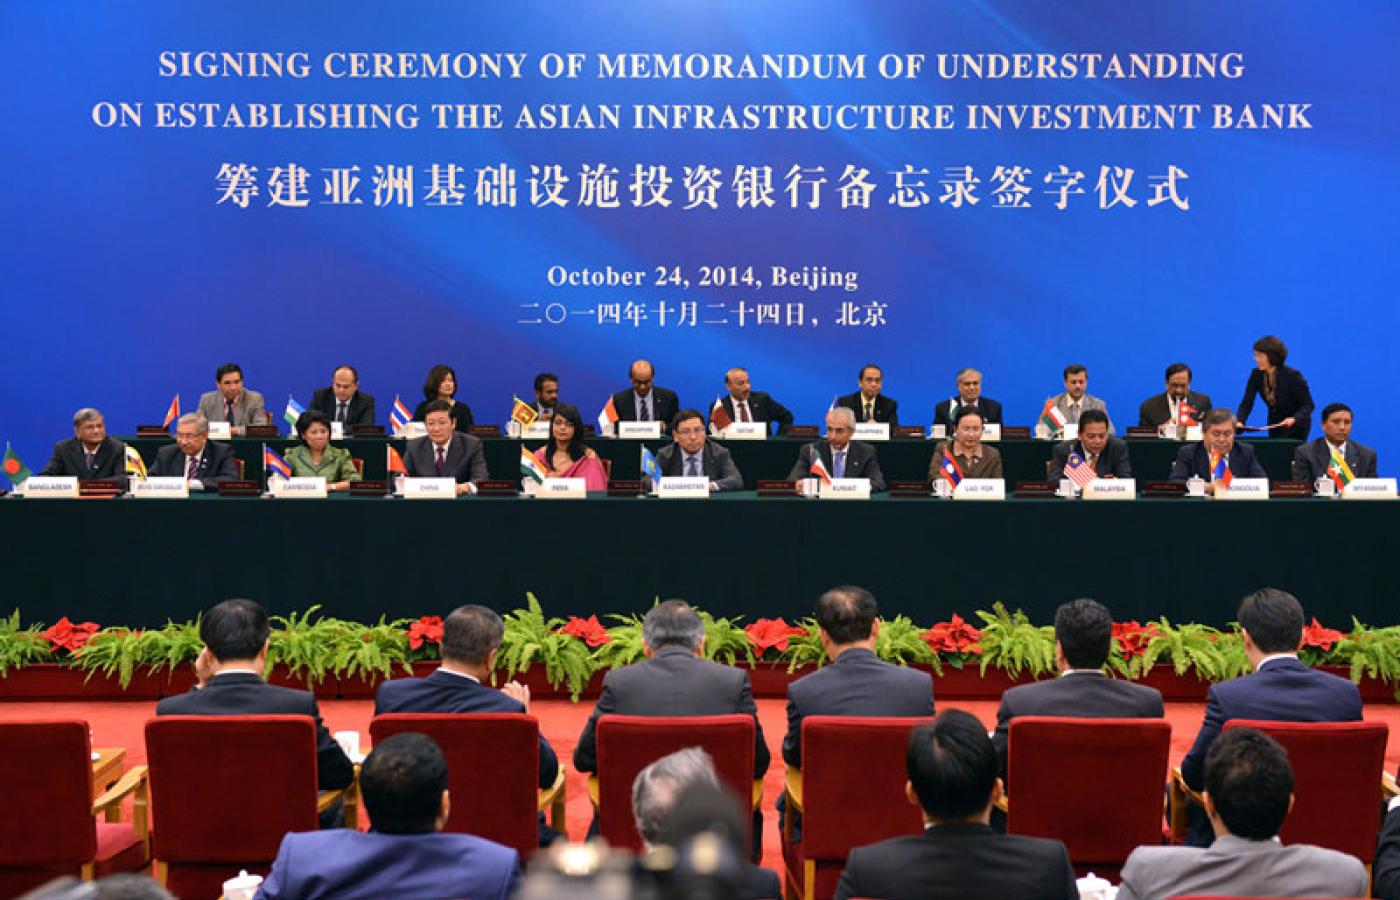 Podpisanie memorandum w sprawie powołania AIIB, Pekin, 24 października 2014.